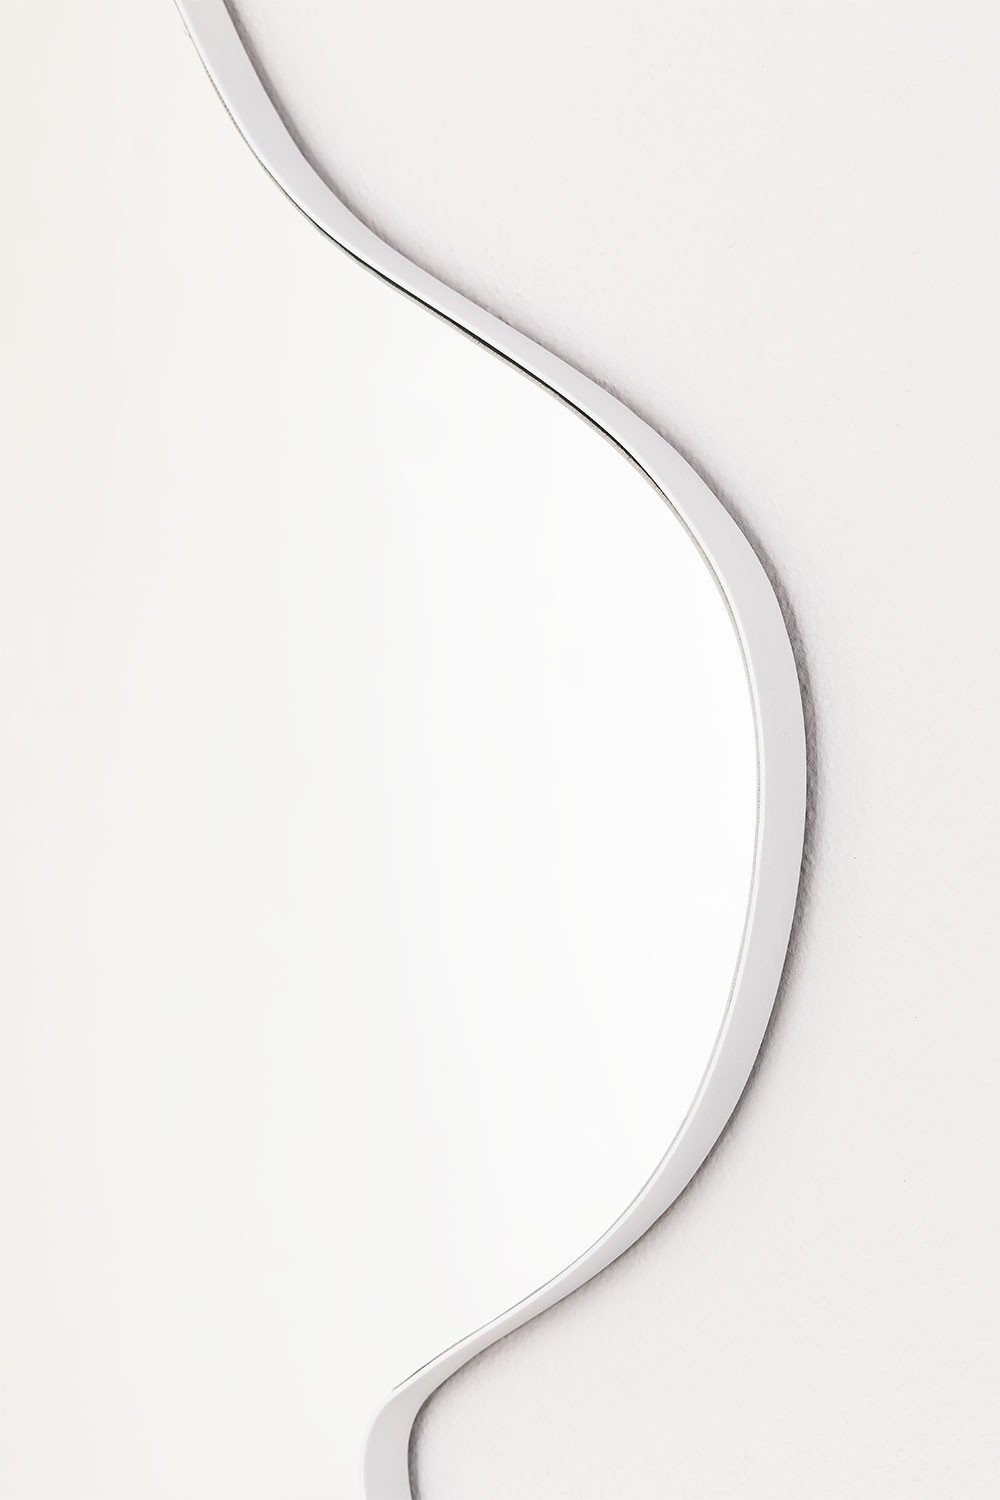 Miroir en métal (120x77 cm) Ingrid - SKLUM